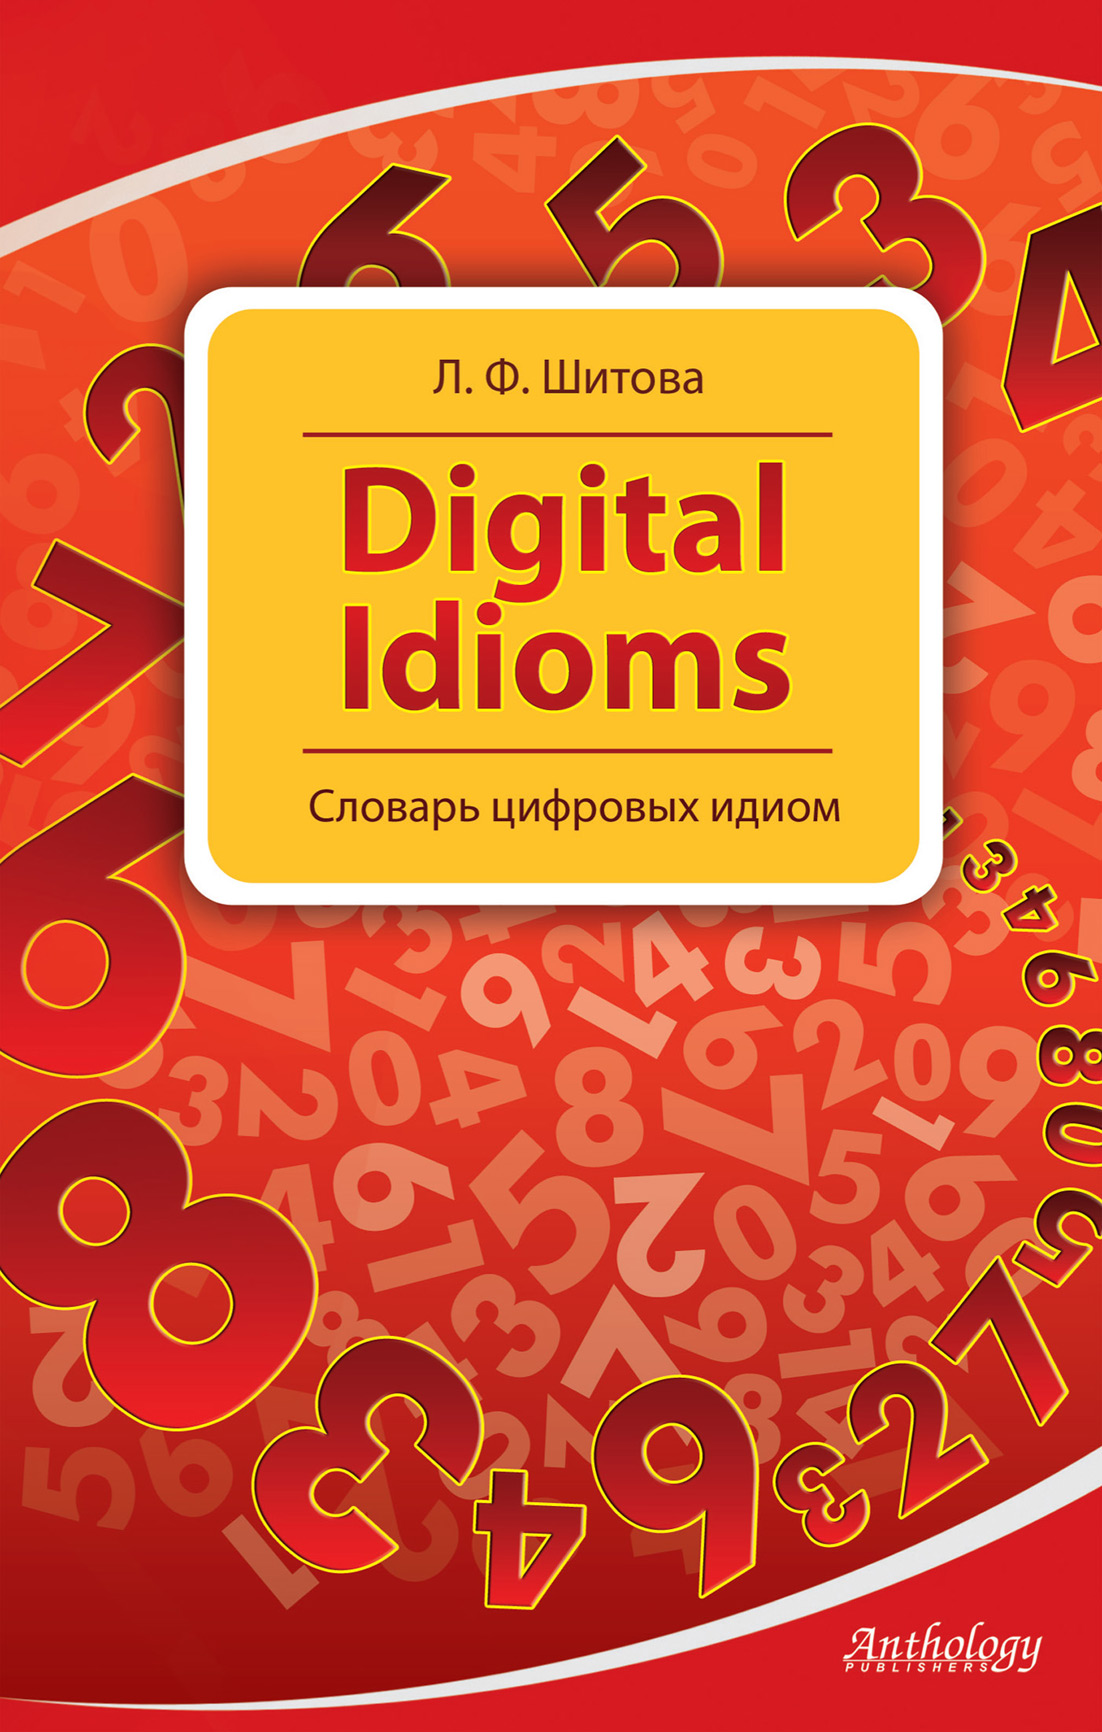 Digital Idioms.Словарь цифровых идиом